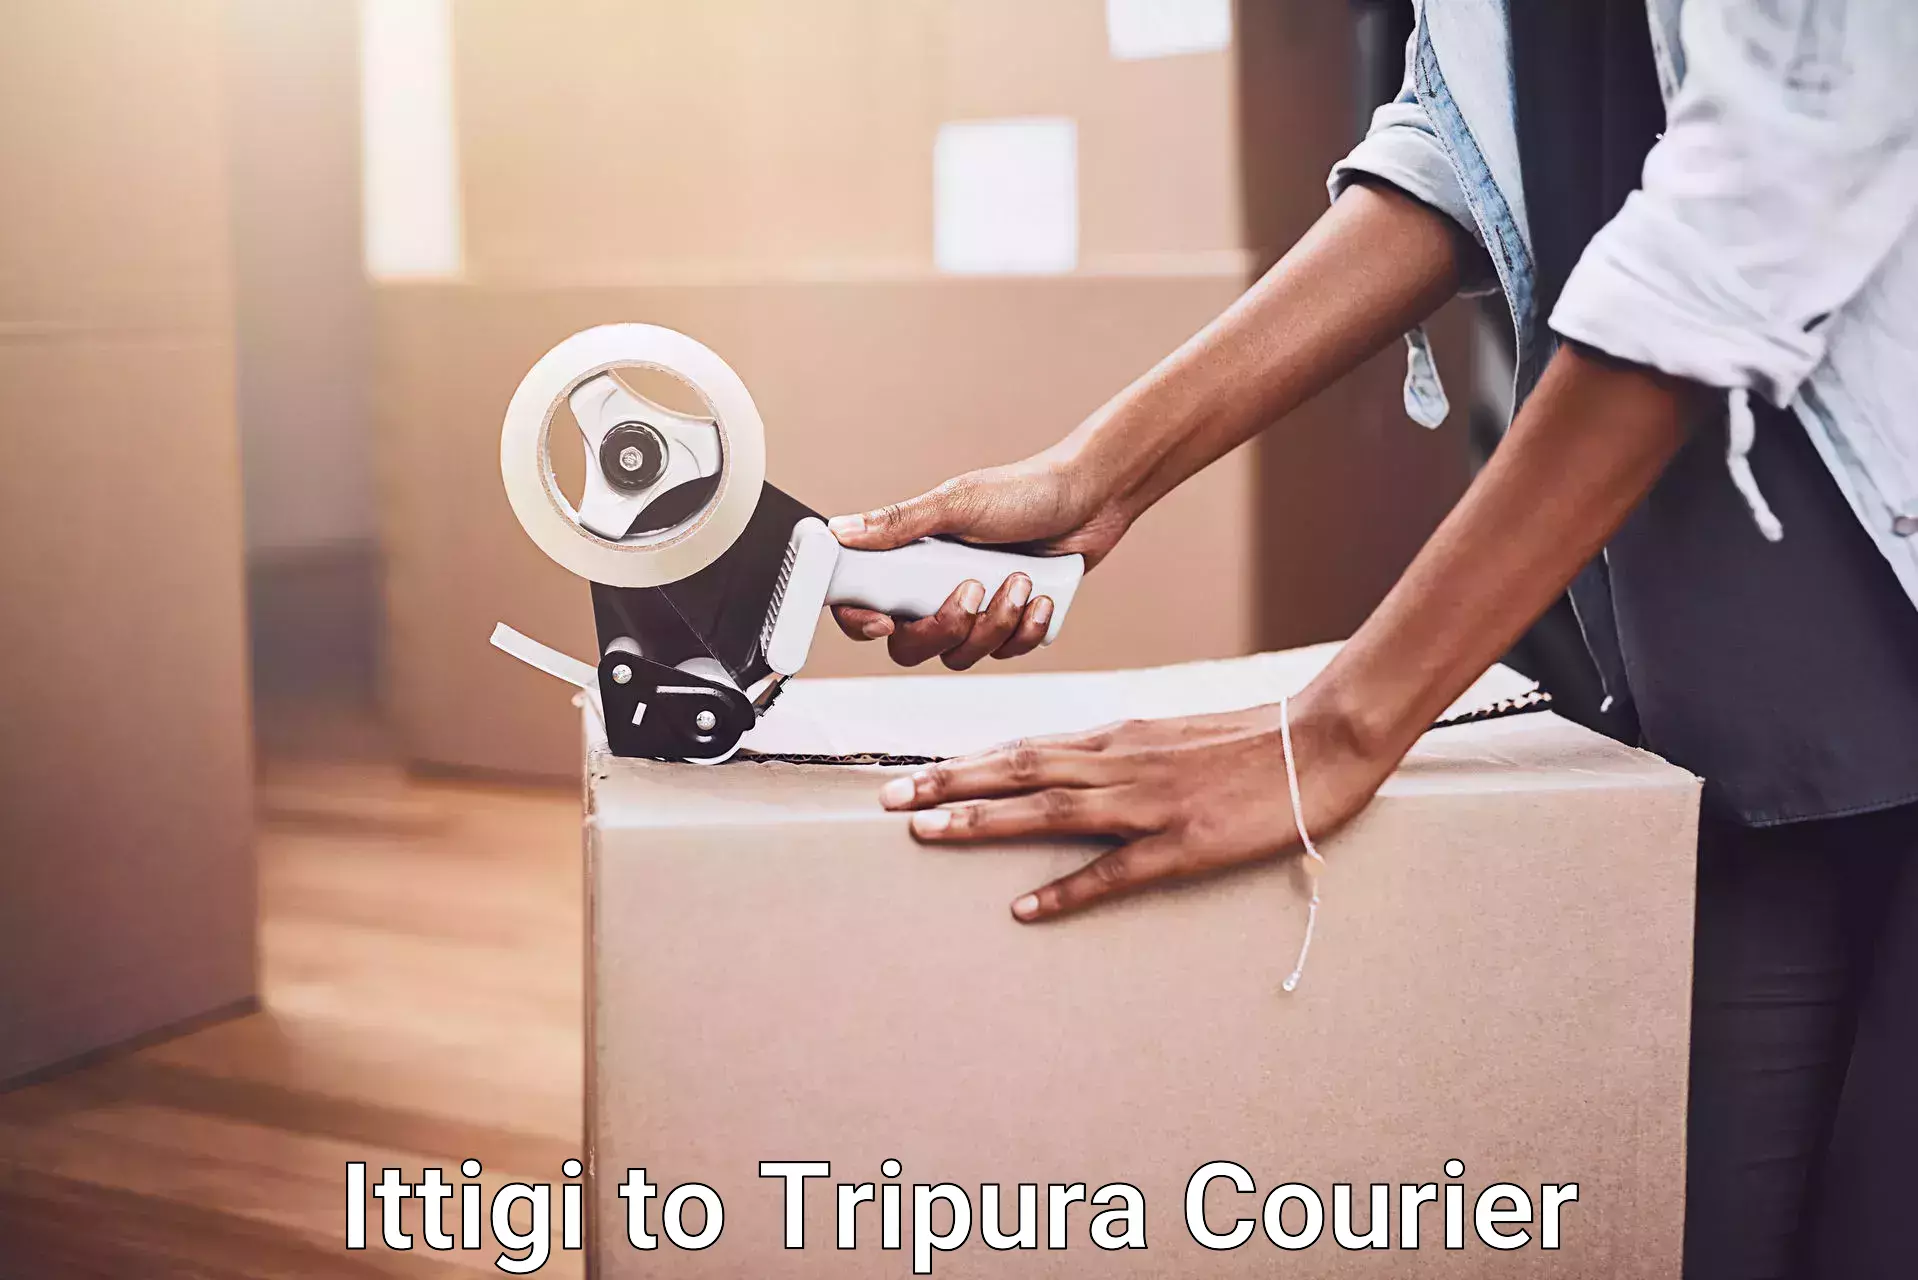 Furniture moving services Ittigi to Amarpur